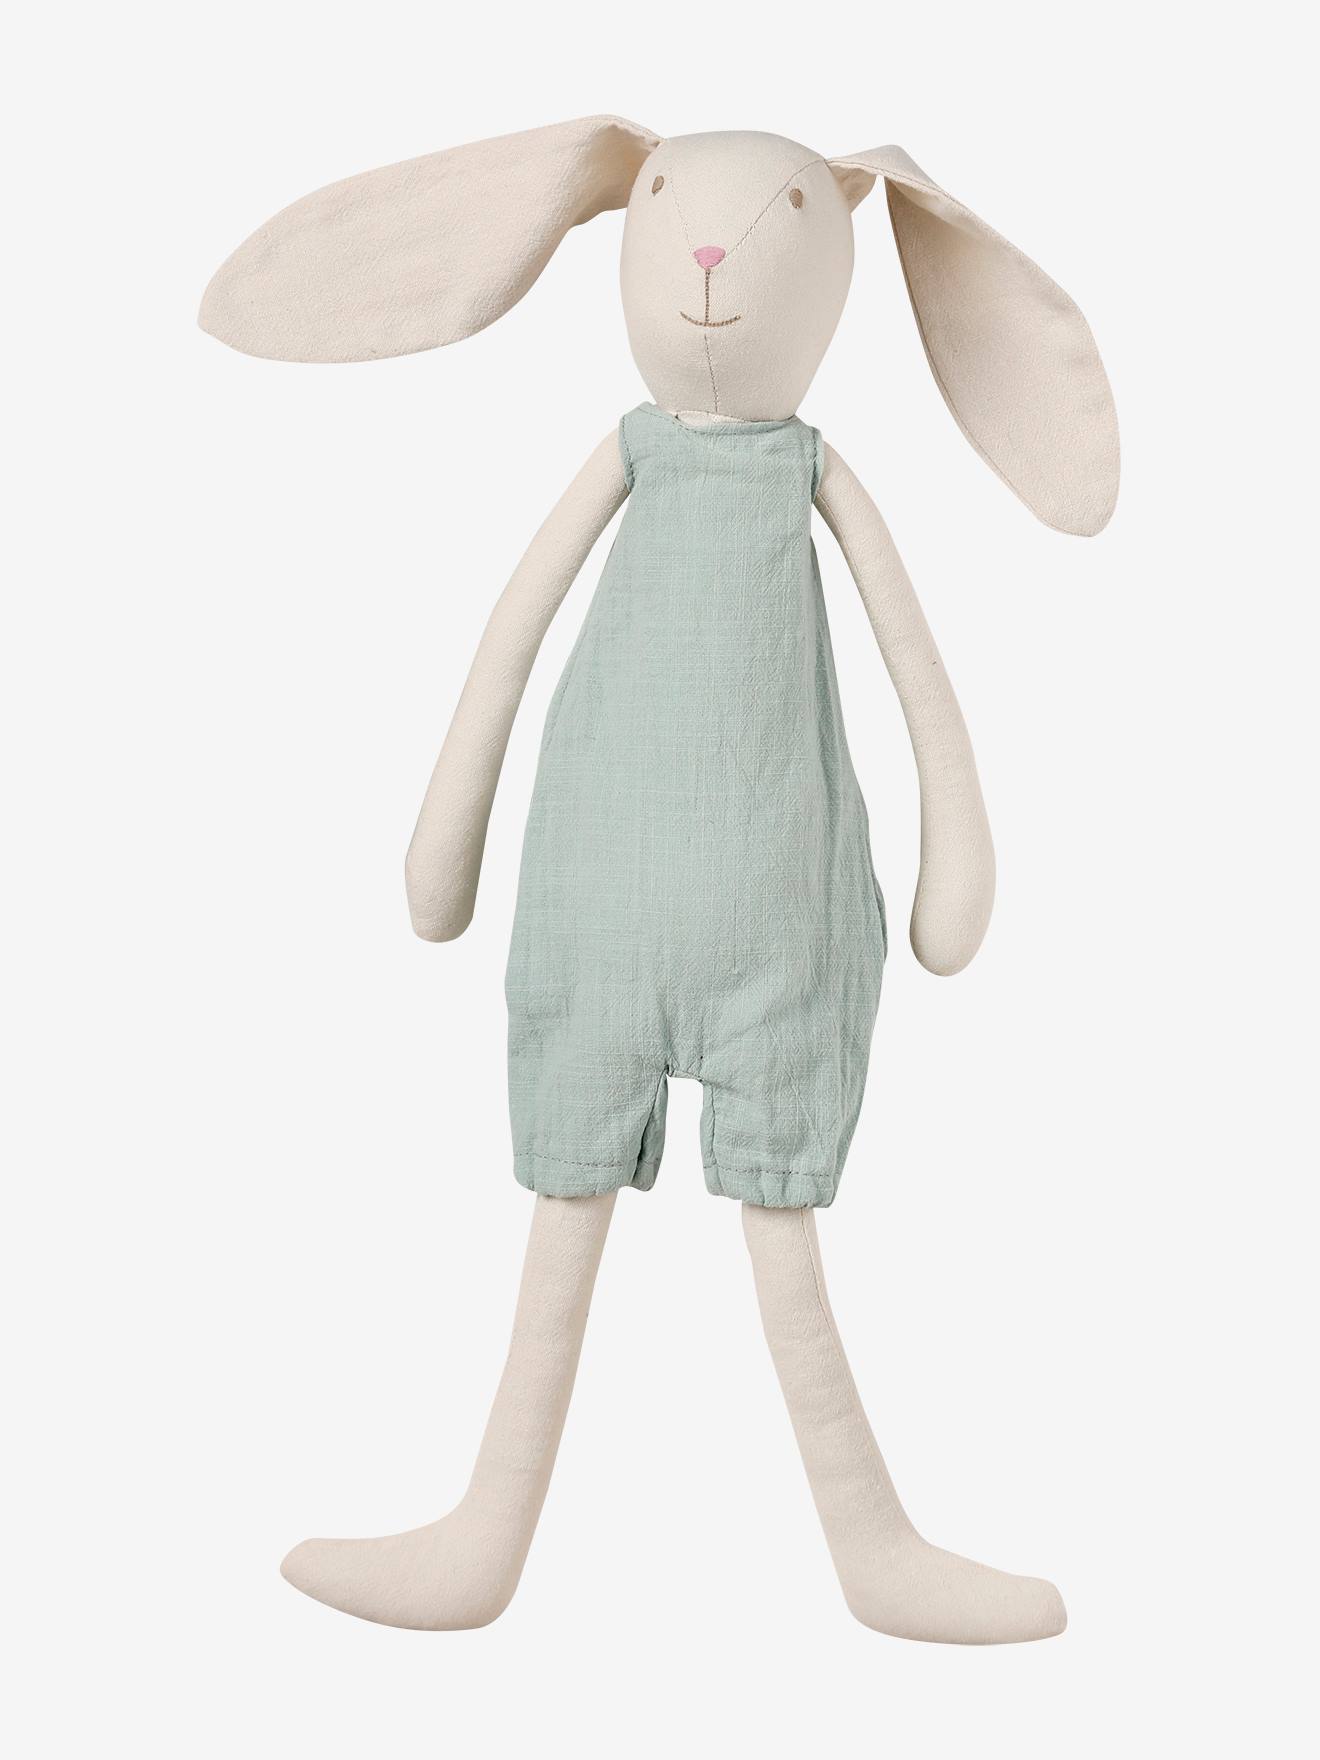 Linen Cuddly Toy, My Friend Mr Rabbit green